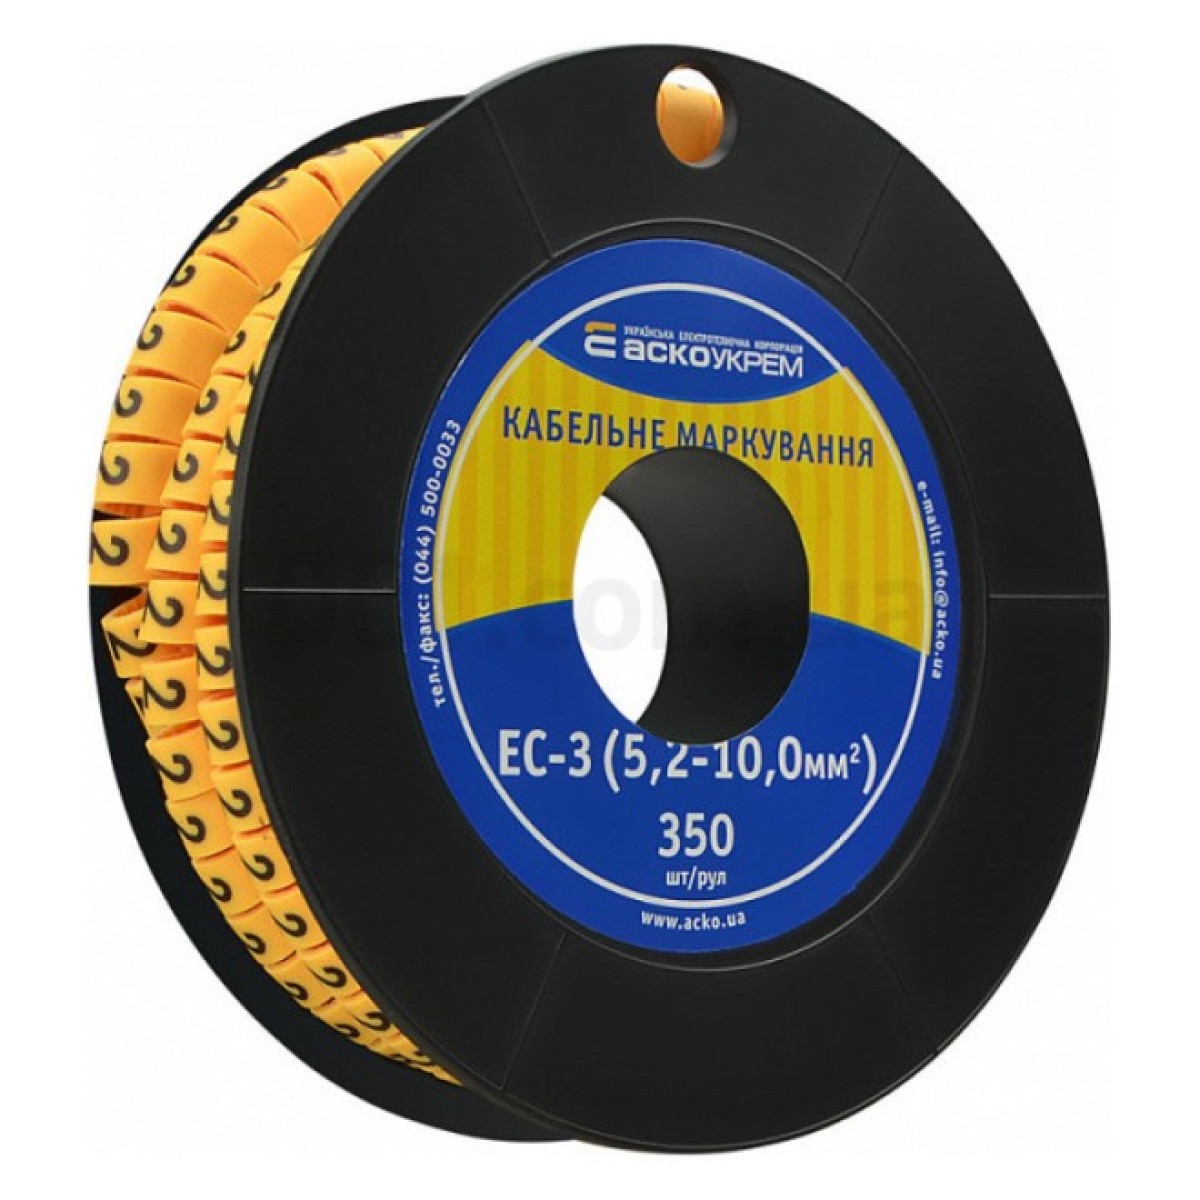 Маркування ЕС-3 для кабелю 5,2-10,0 мм² символ «2» (рулон 250 шт.), АСКО-УКРЕМ 256_256.jpg